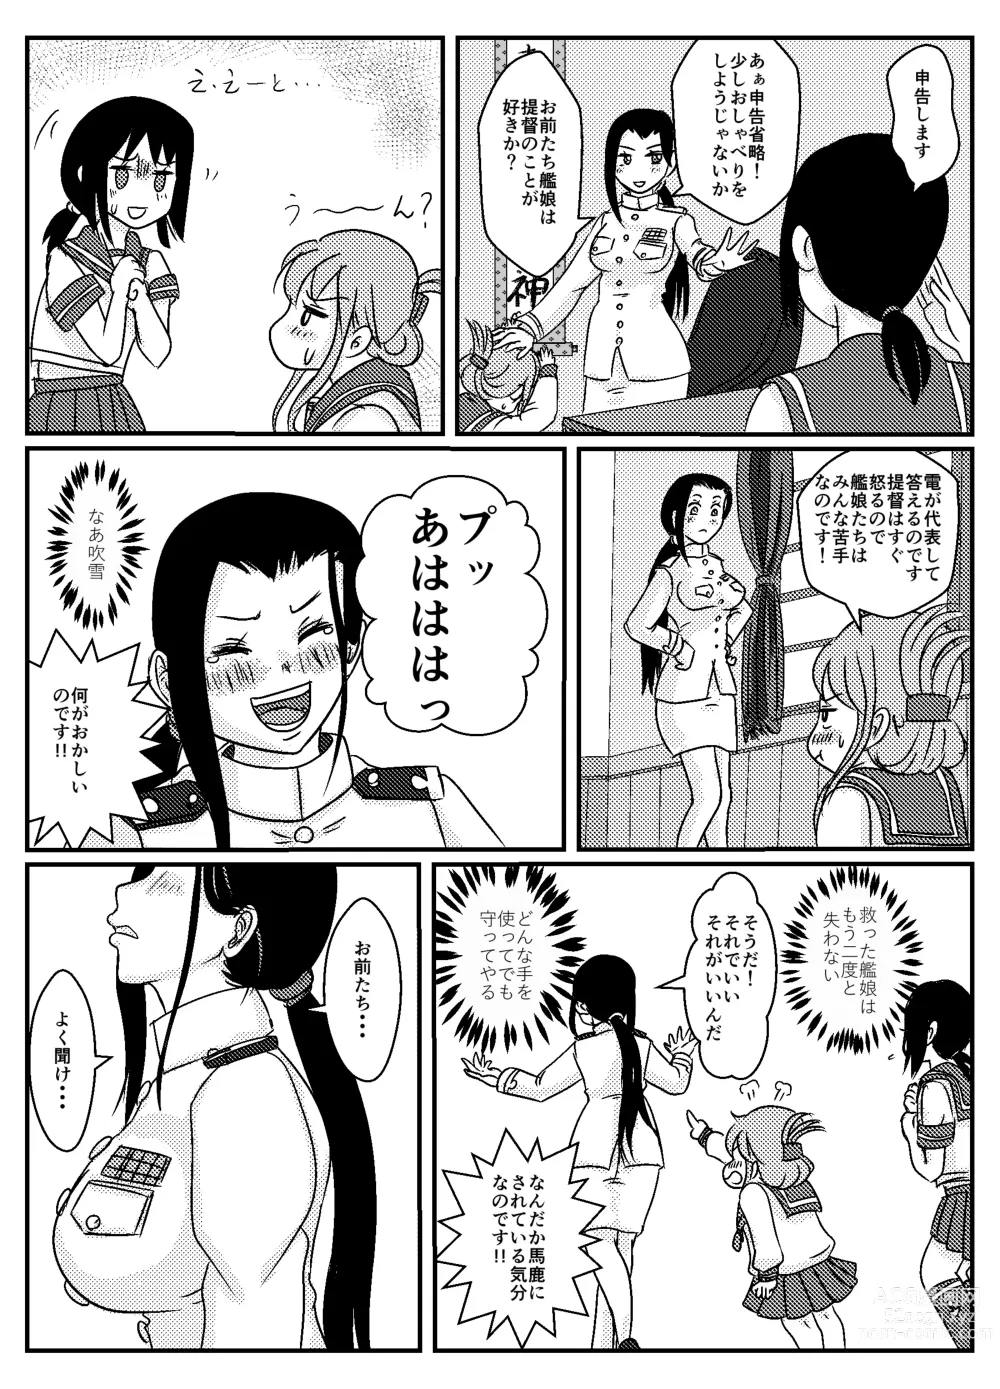 Page 30 of doujinshi Josei Teitoku no Miru Yume wa